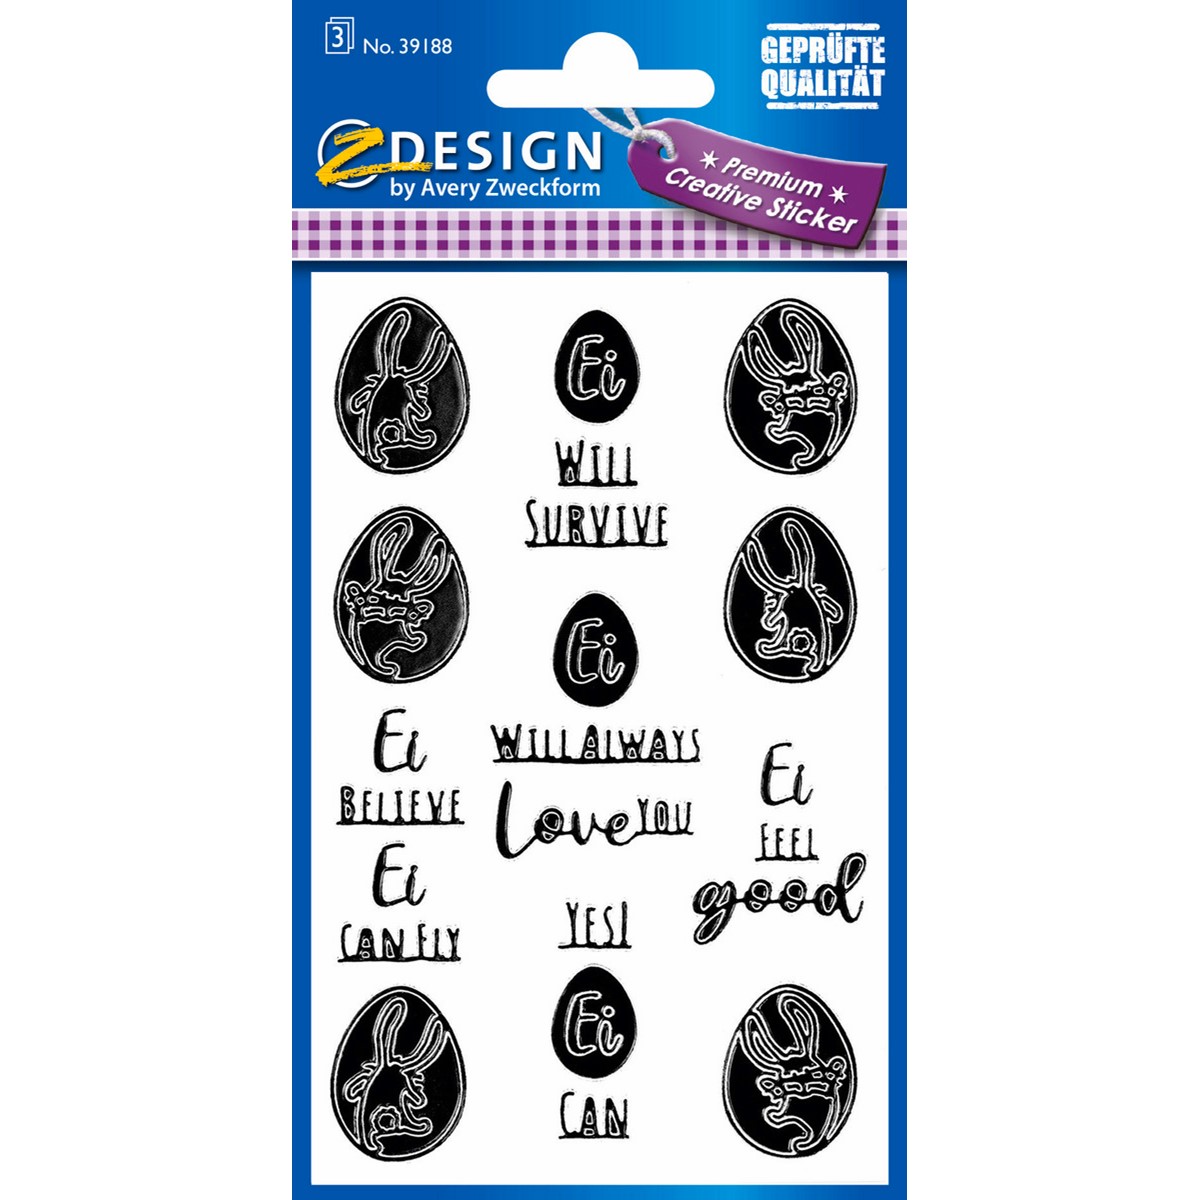 Generisch Limited Edition Aufkleber Sticker Spruch Text Tuning rar selten  treffen 10x2cm Farbe: Schwarz